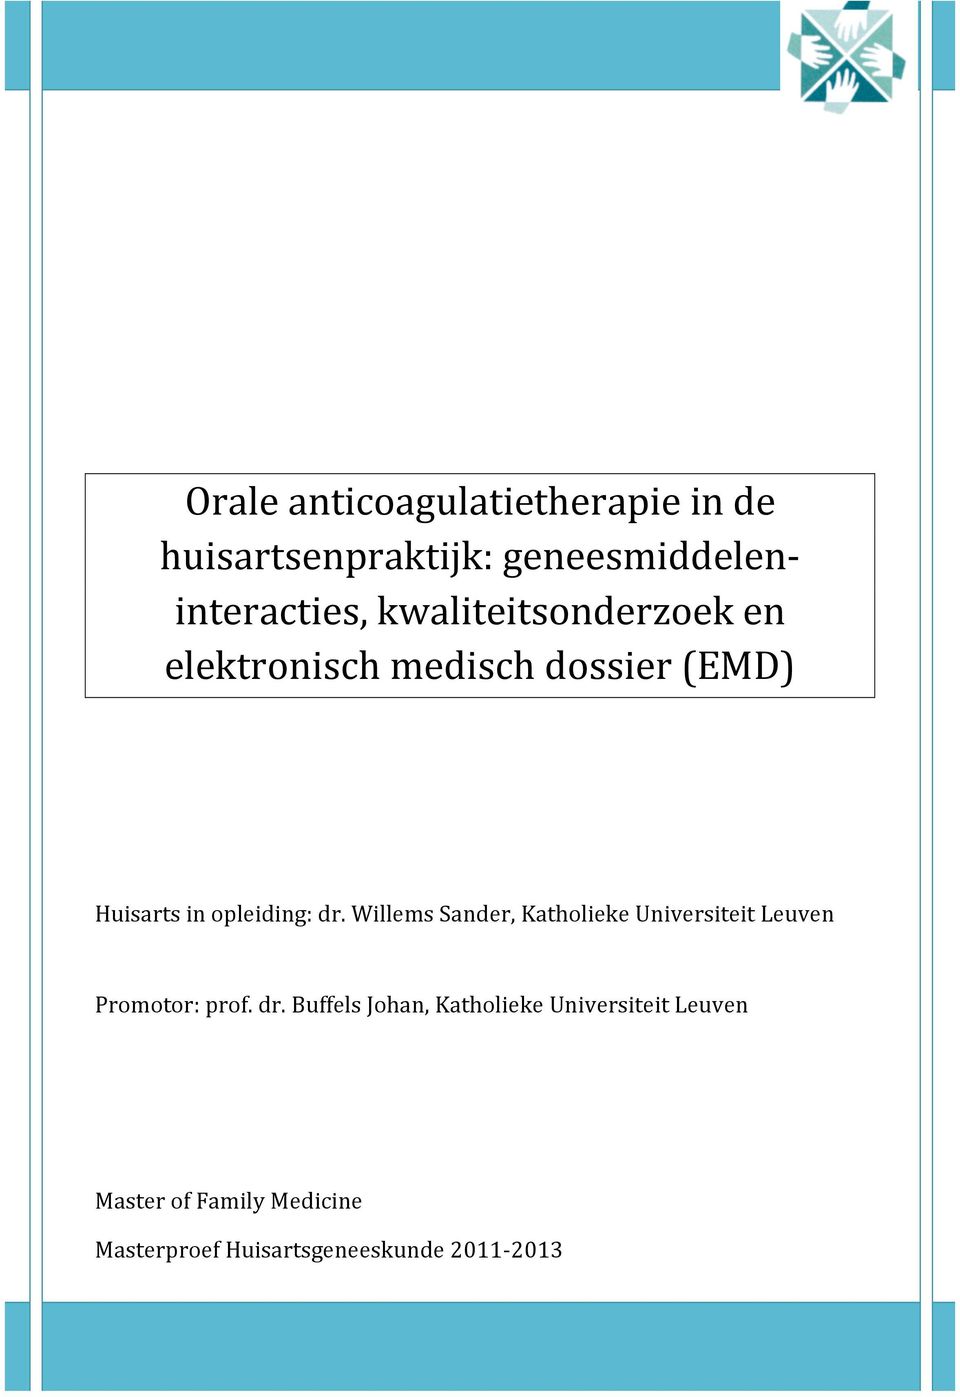 elektronischmedischdossier(emd) Huisartsinopleiding:dr.